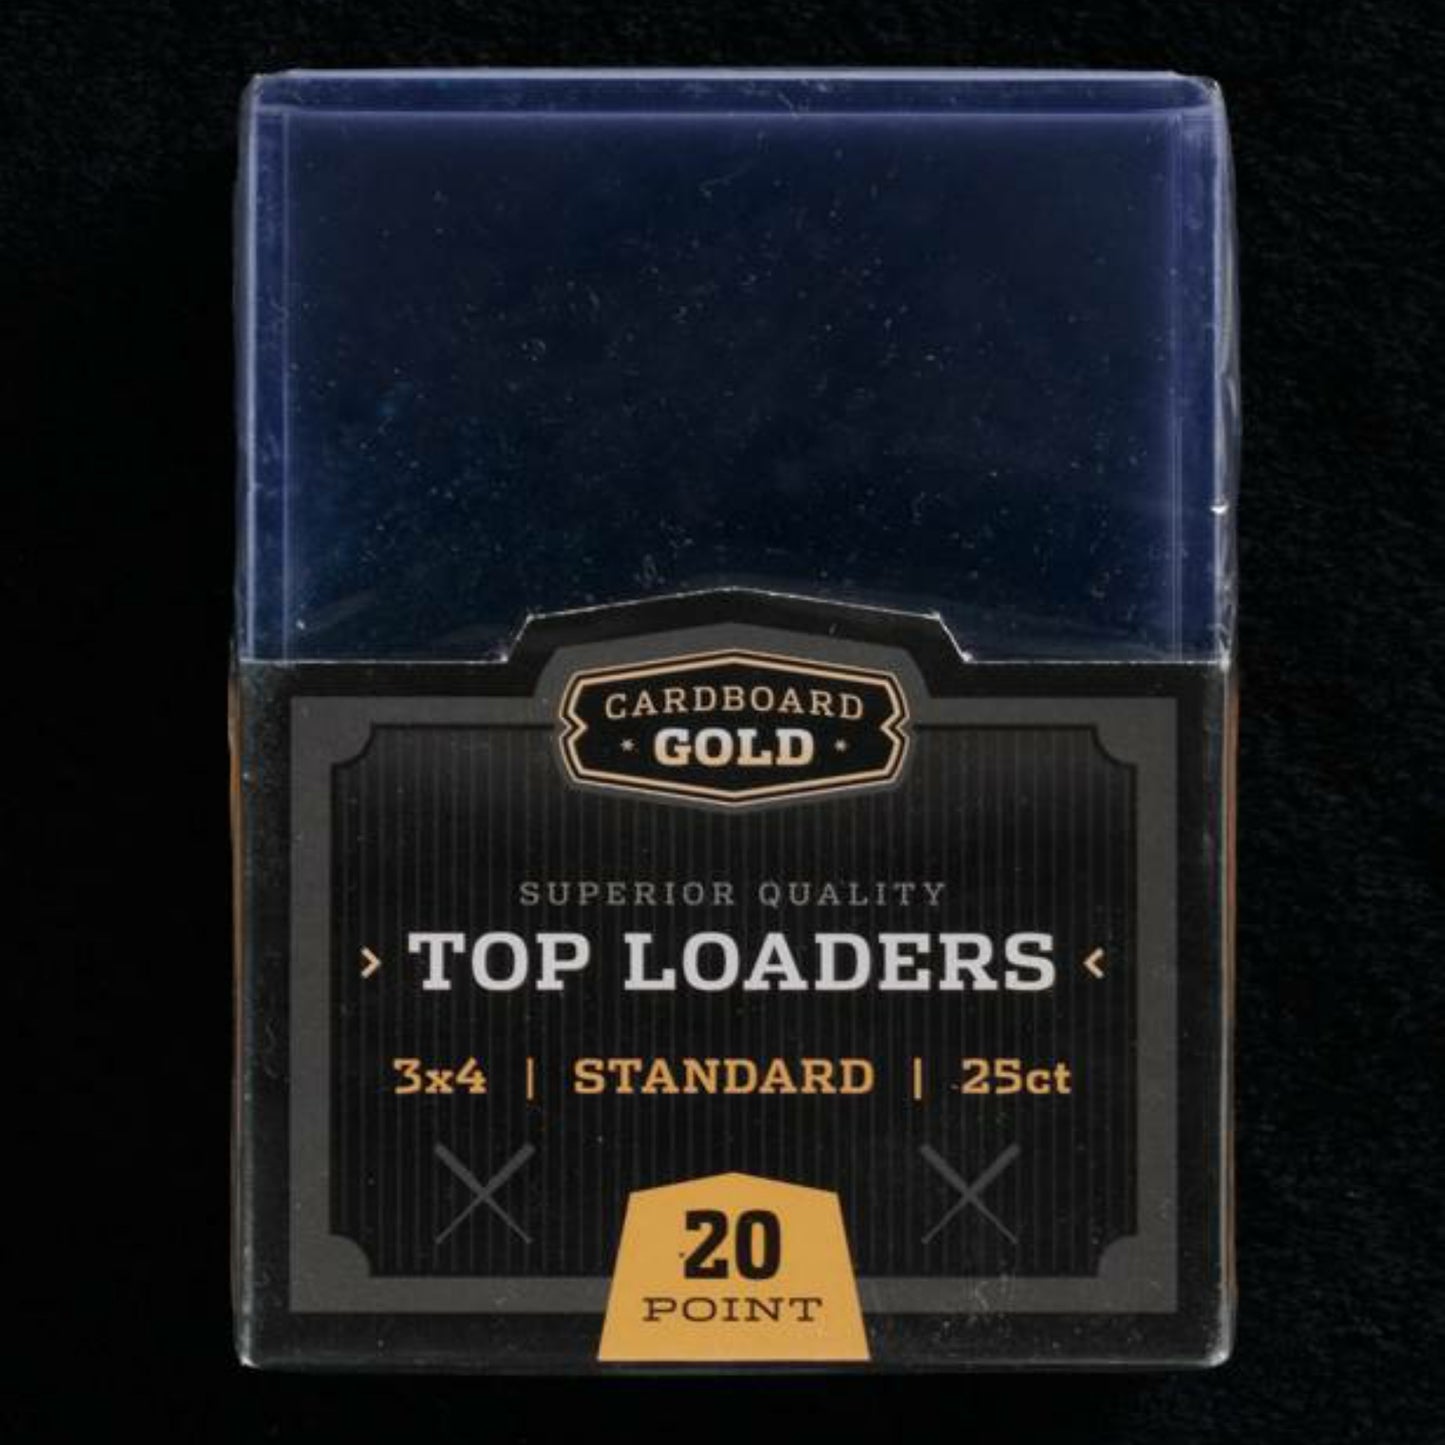 Cardboard Gold 3 x 4 Top Loader Toploader - 20 Point/Pt